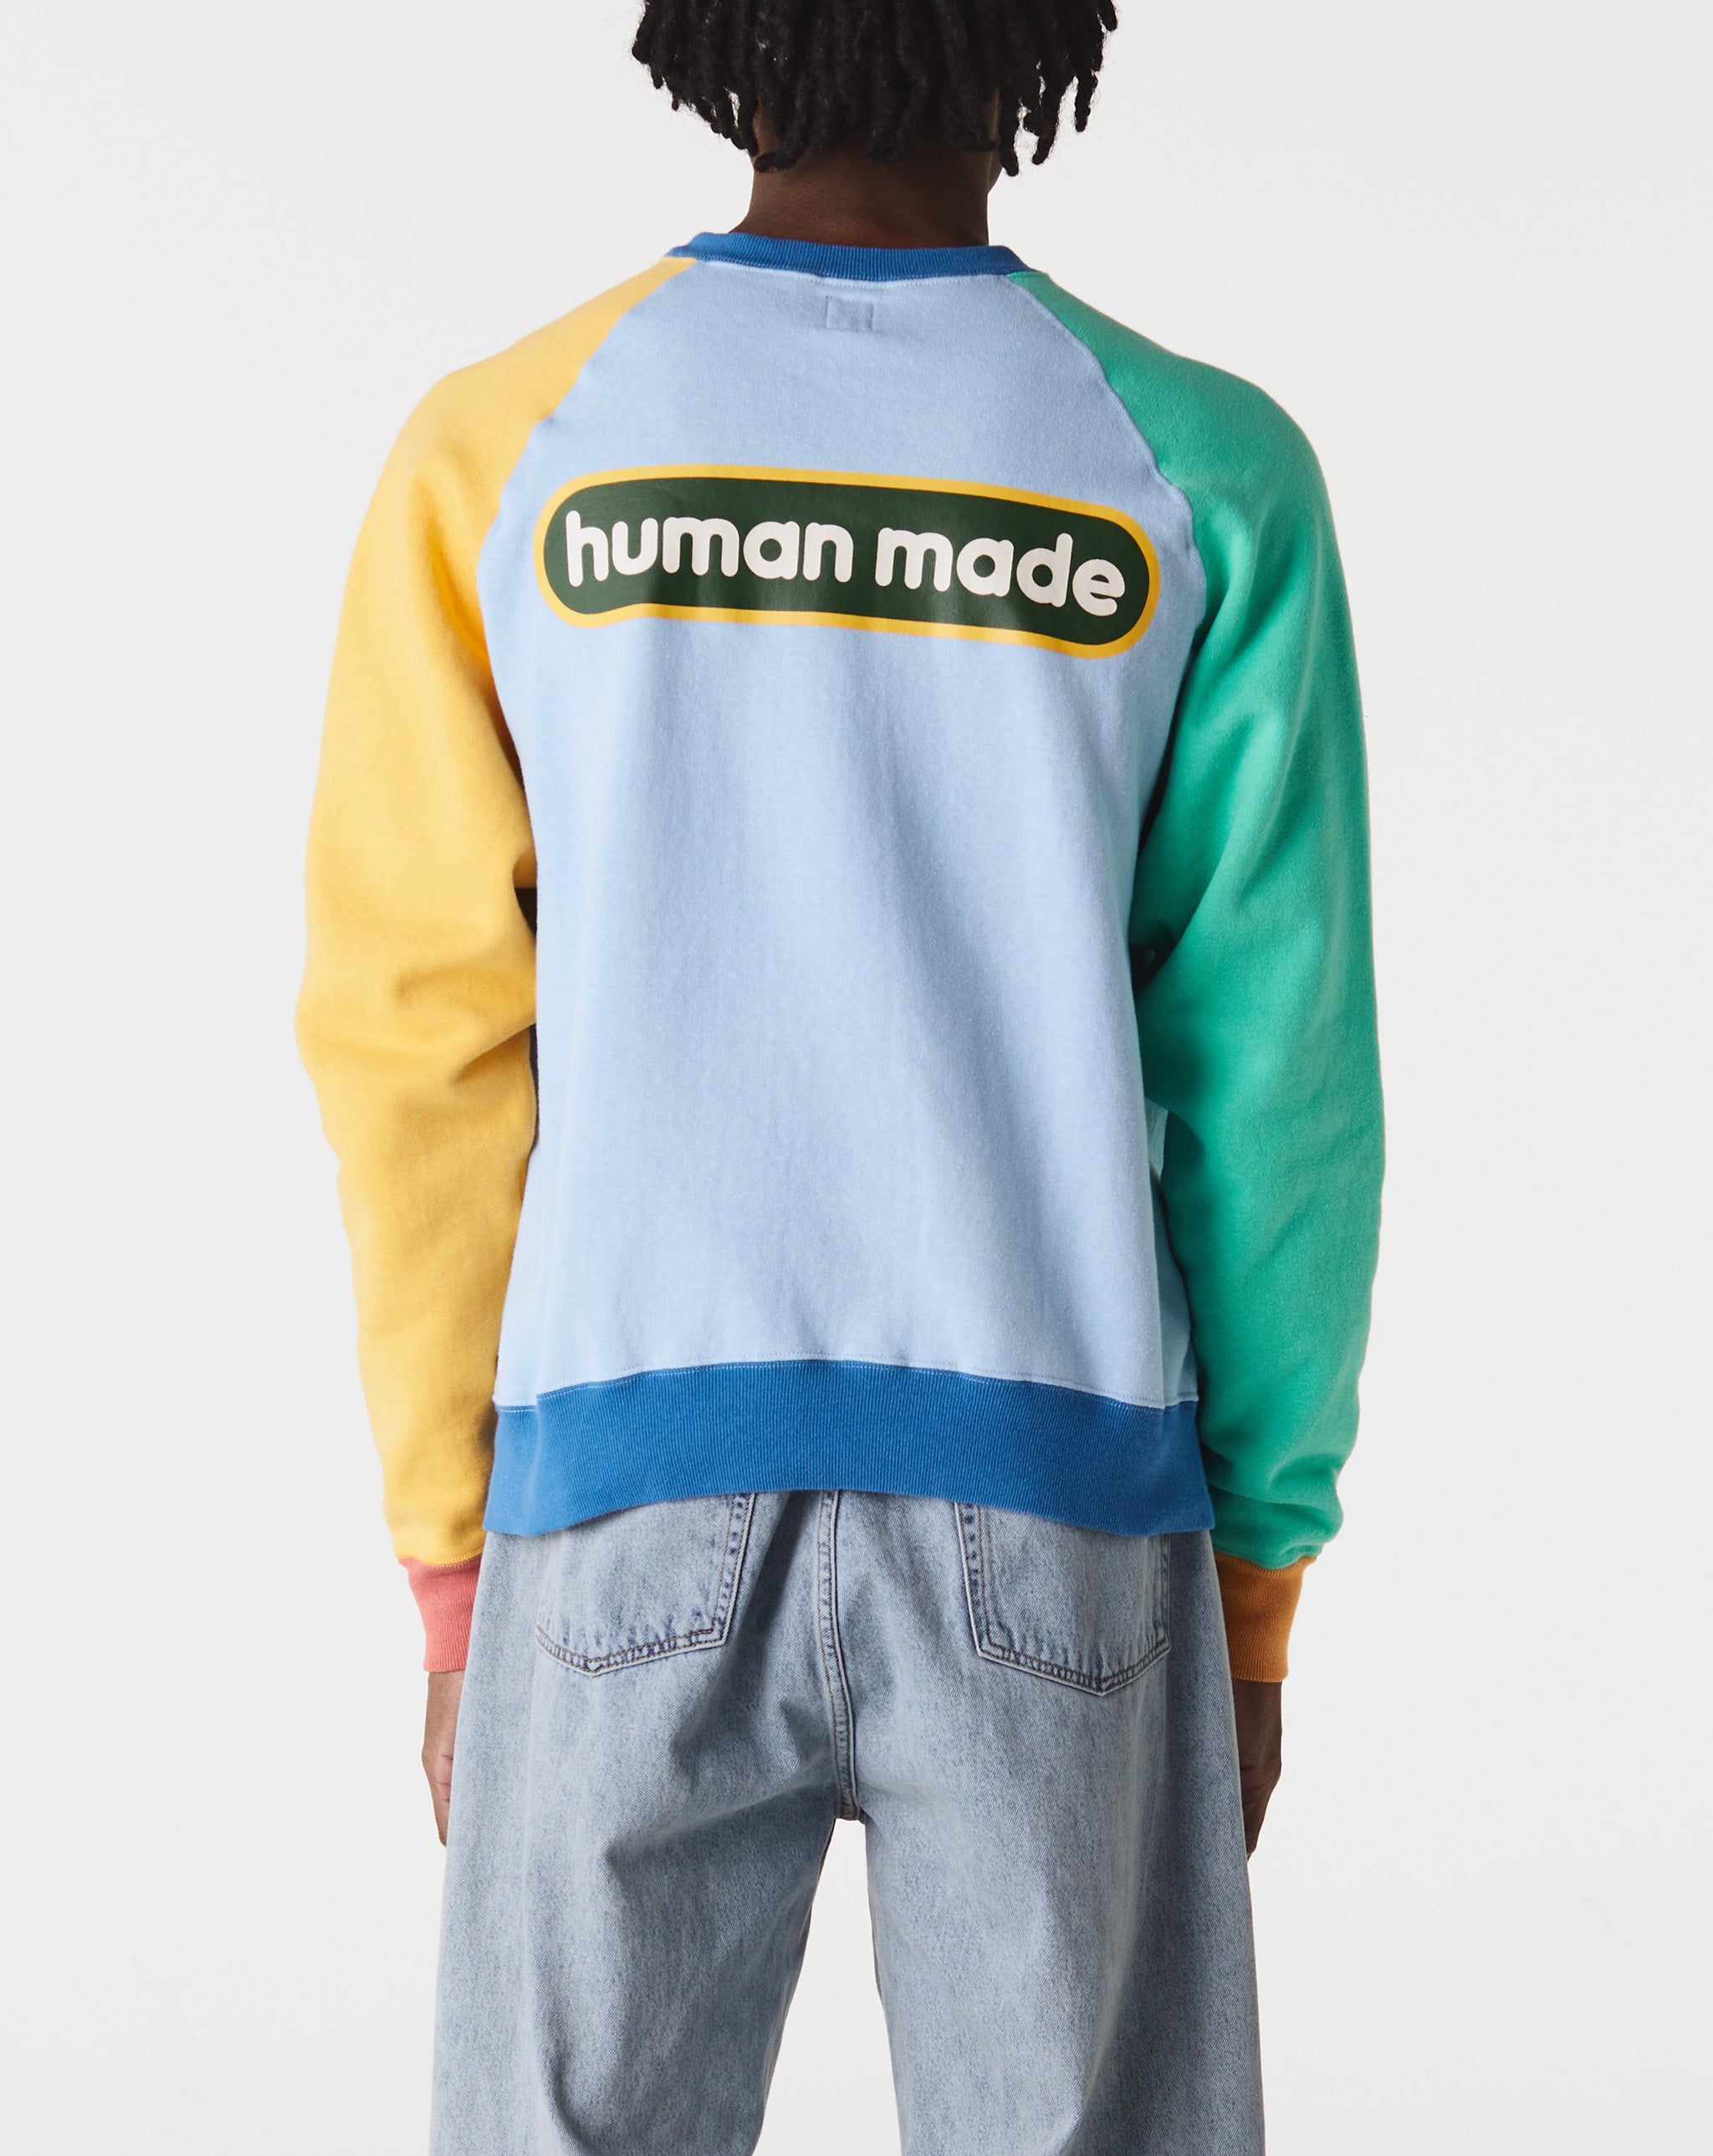 Human Made Crazy Tsuriami Sweatshirt  - XHIBITION